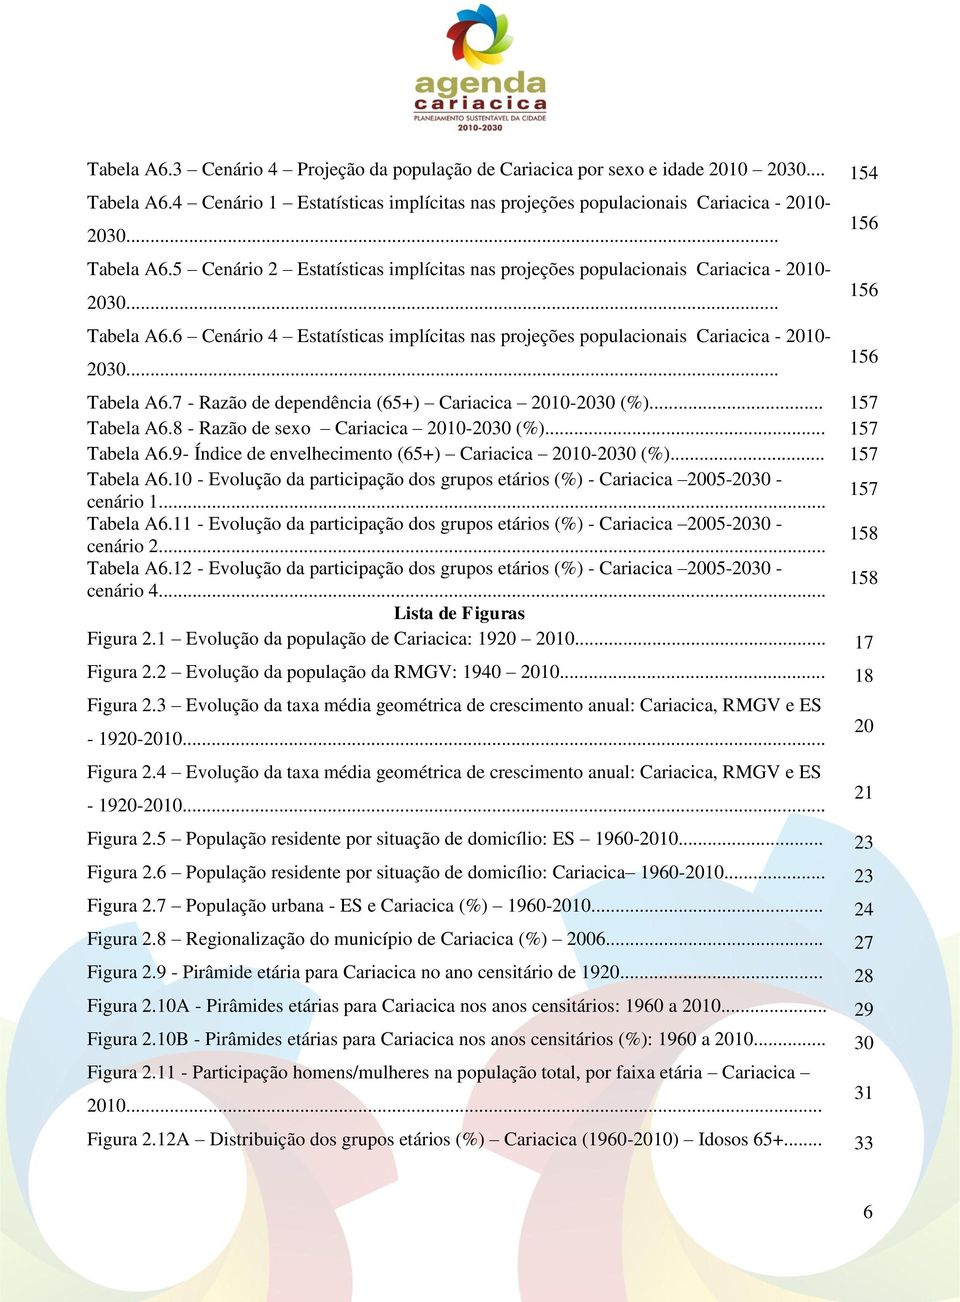 8 - Razão de sexo Cariacica 2010-2030 (%)... 157 Tabela A6.9- Índice de envelhecimento (65+) Cariacica 2010-2030 (%)... 157 Tabela A6.10 - Evolução da participação dos grupos etários (%) - Cariacica 2005-2030 - cenário 1.